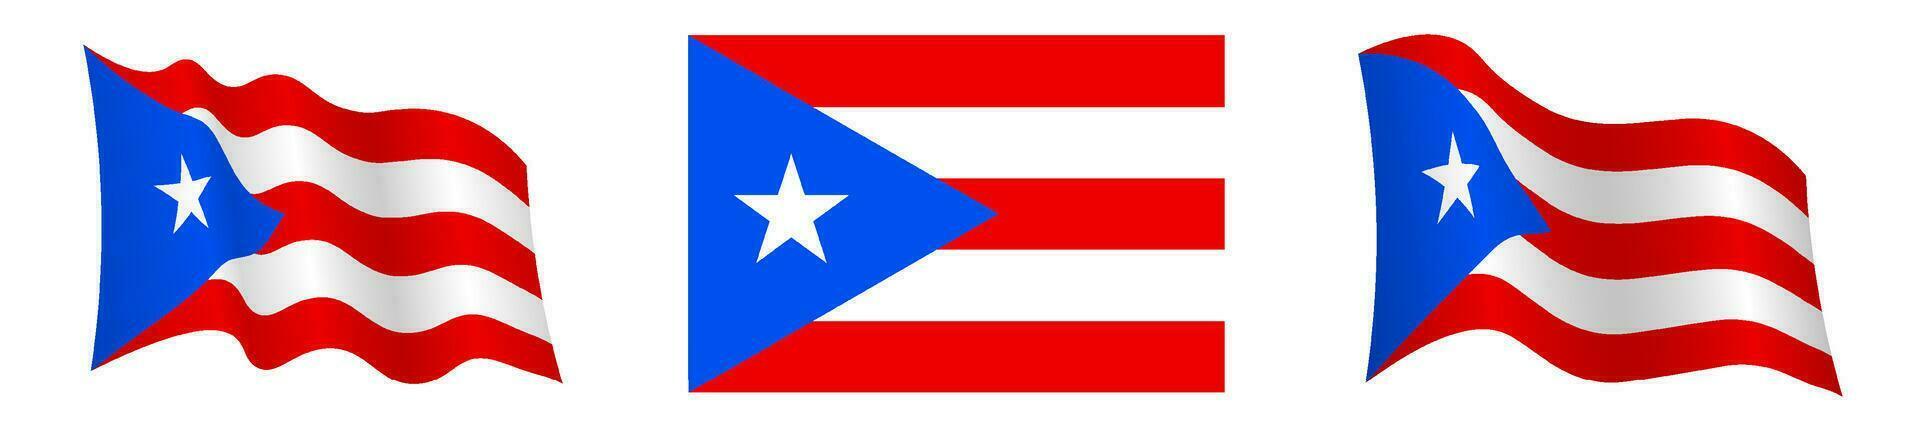 Flagge von puerto rico im statisch Position und im Bewegung, flattern im Wind im genau Farben und Größen, auf Weiß Hintergrund vektor